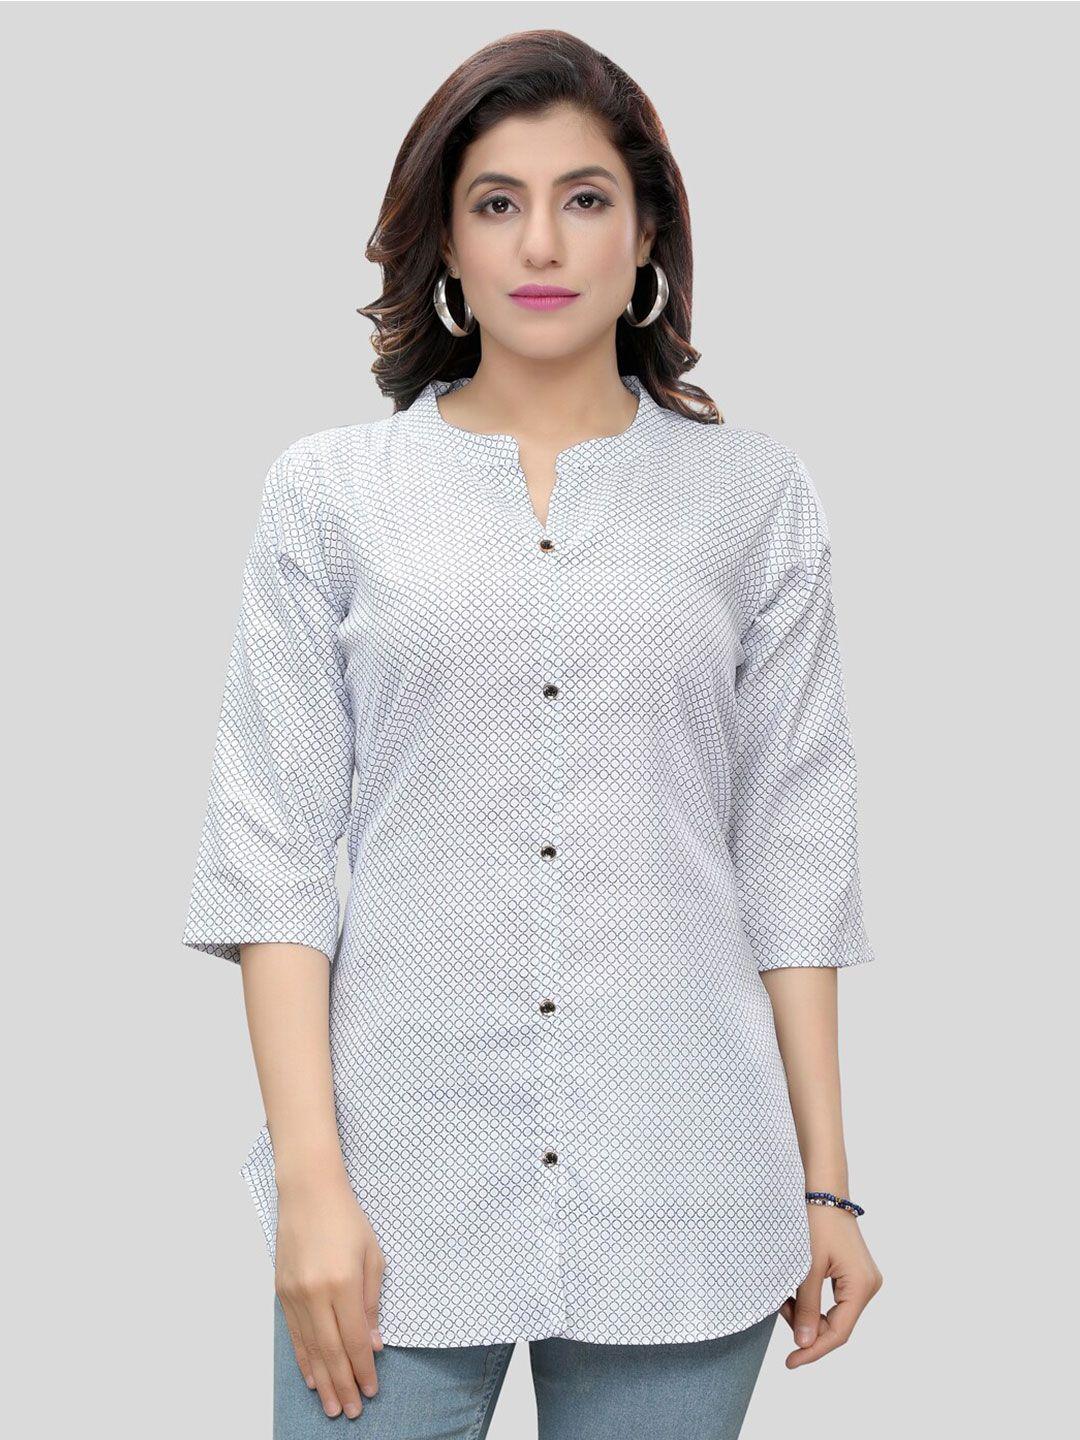 saree-swarg-white-geometric-printed-kurti